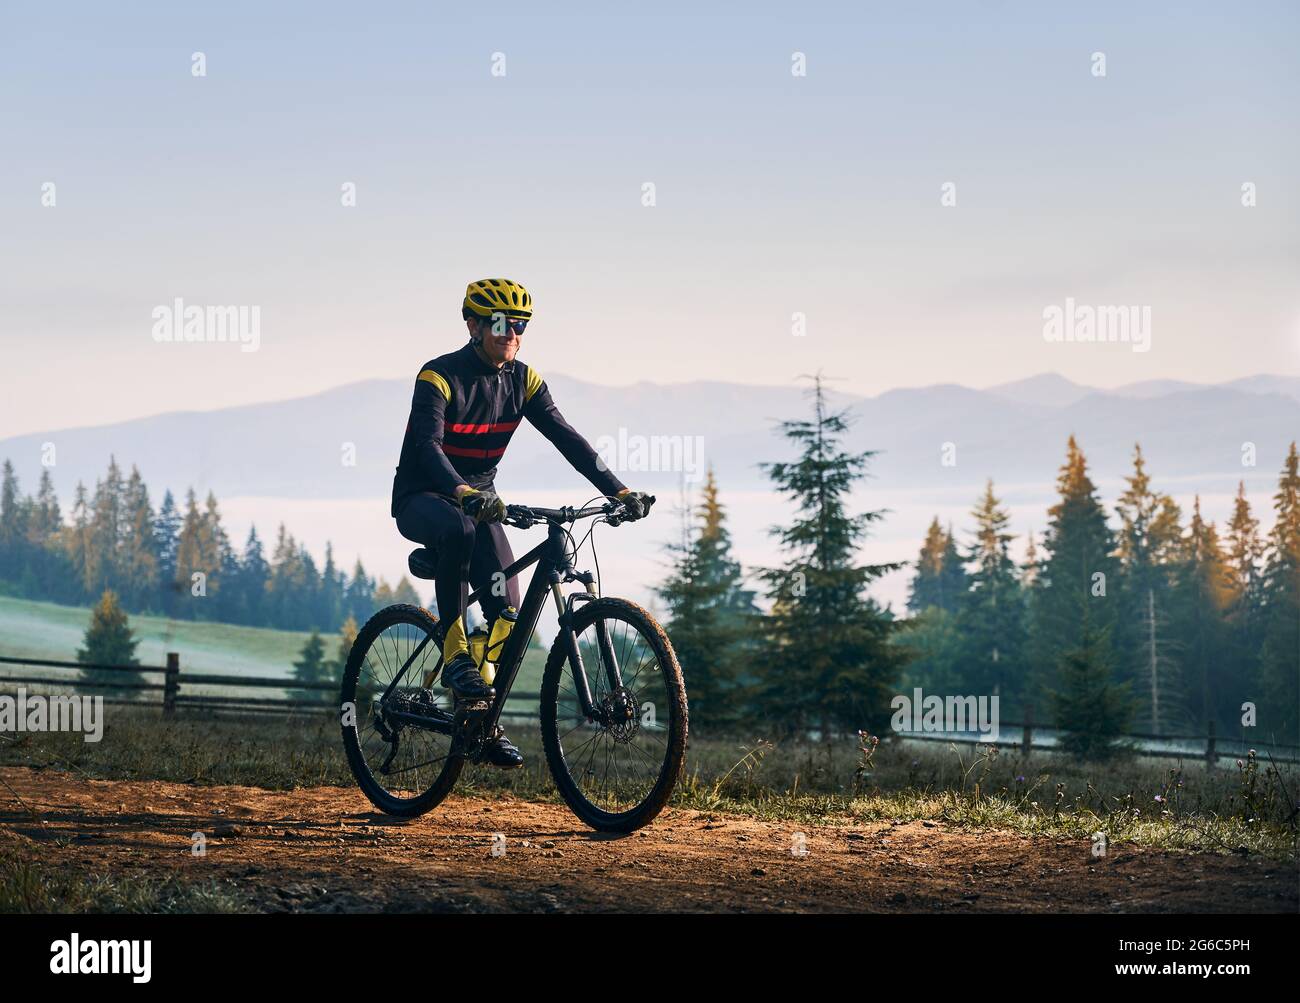 Glücklicher Radfahrer im Radanzug Fahrrad auf Bergstraße mit Nadelbäumen und Hügeln im Hintergrund reiten. Mann Fahrradfahrer trägt Schutzhelm und Brille, während Sie Fahrrad fahren in den Bergen. Stockfoto